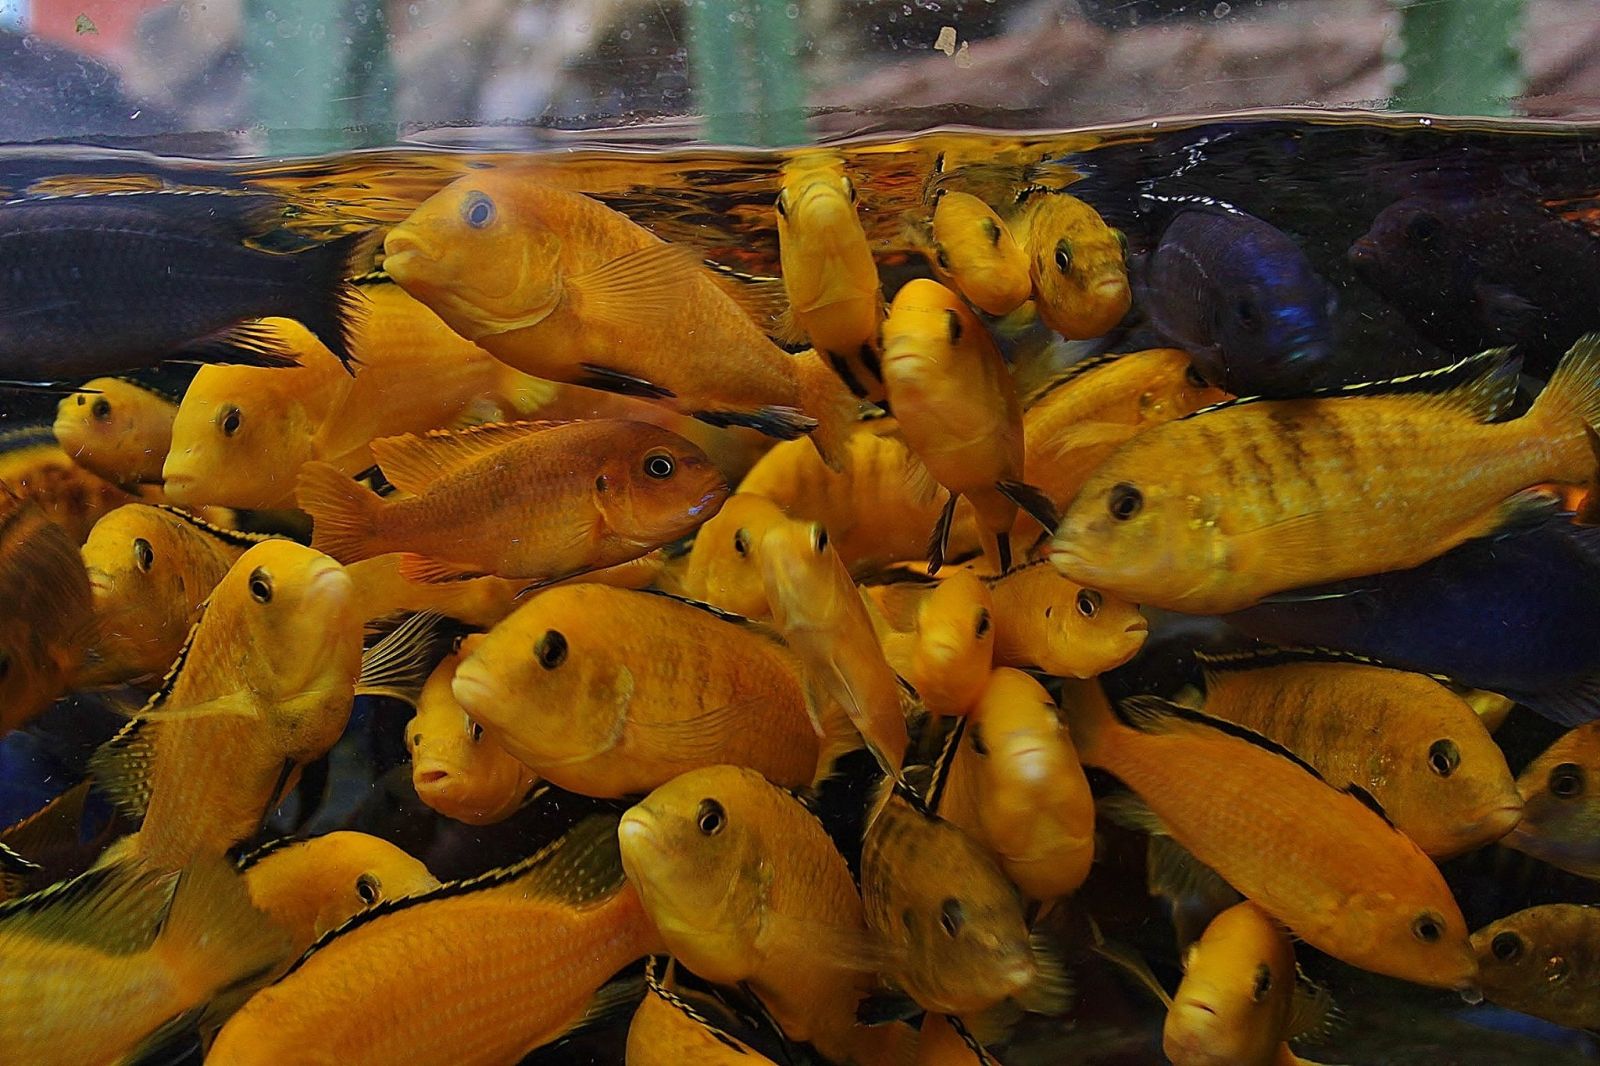 Aqua Tots at Bristol Aquarium 